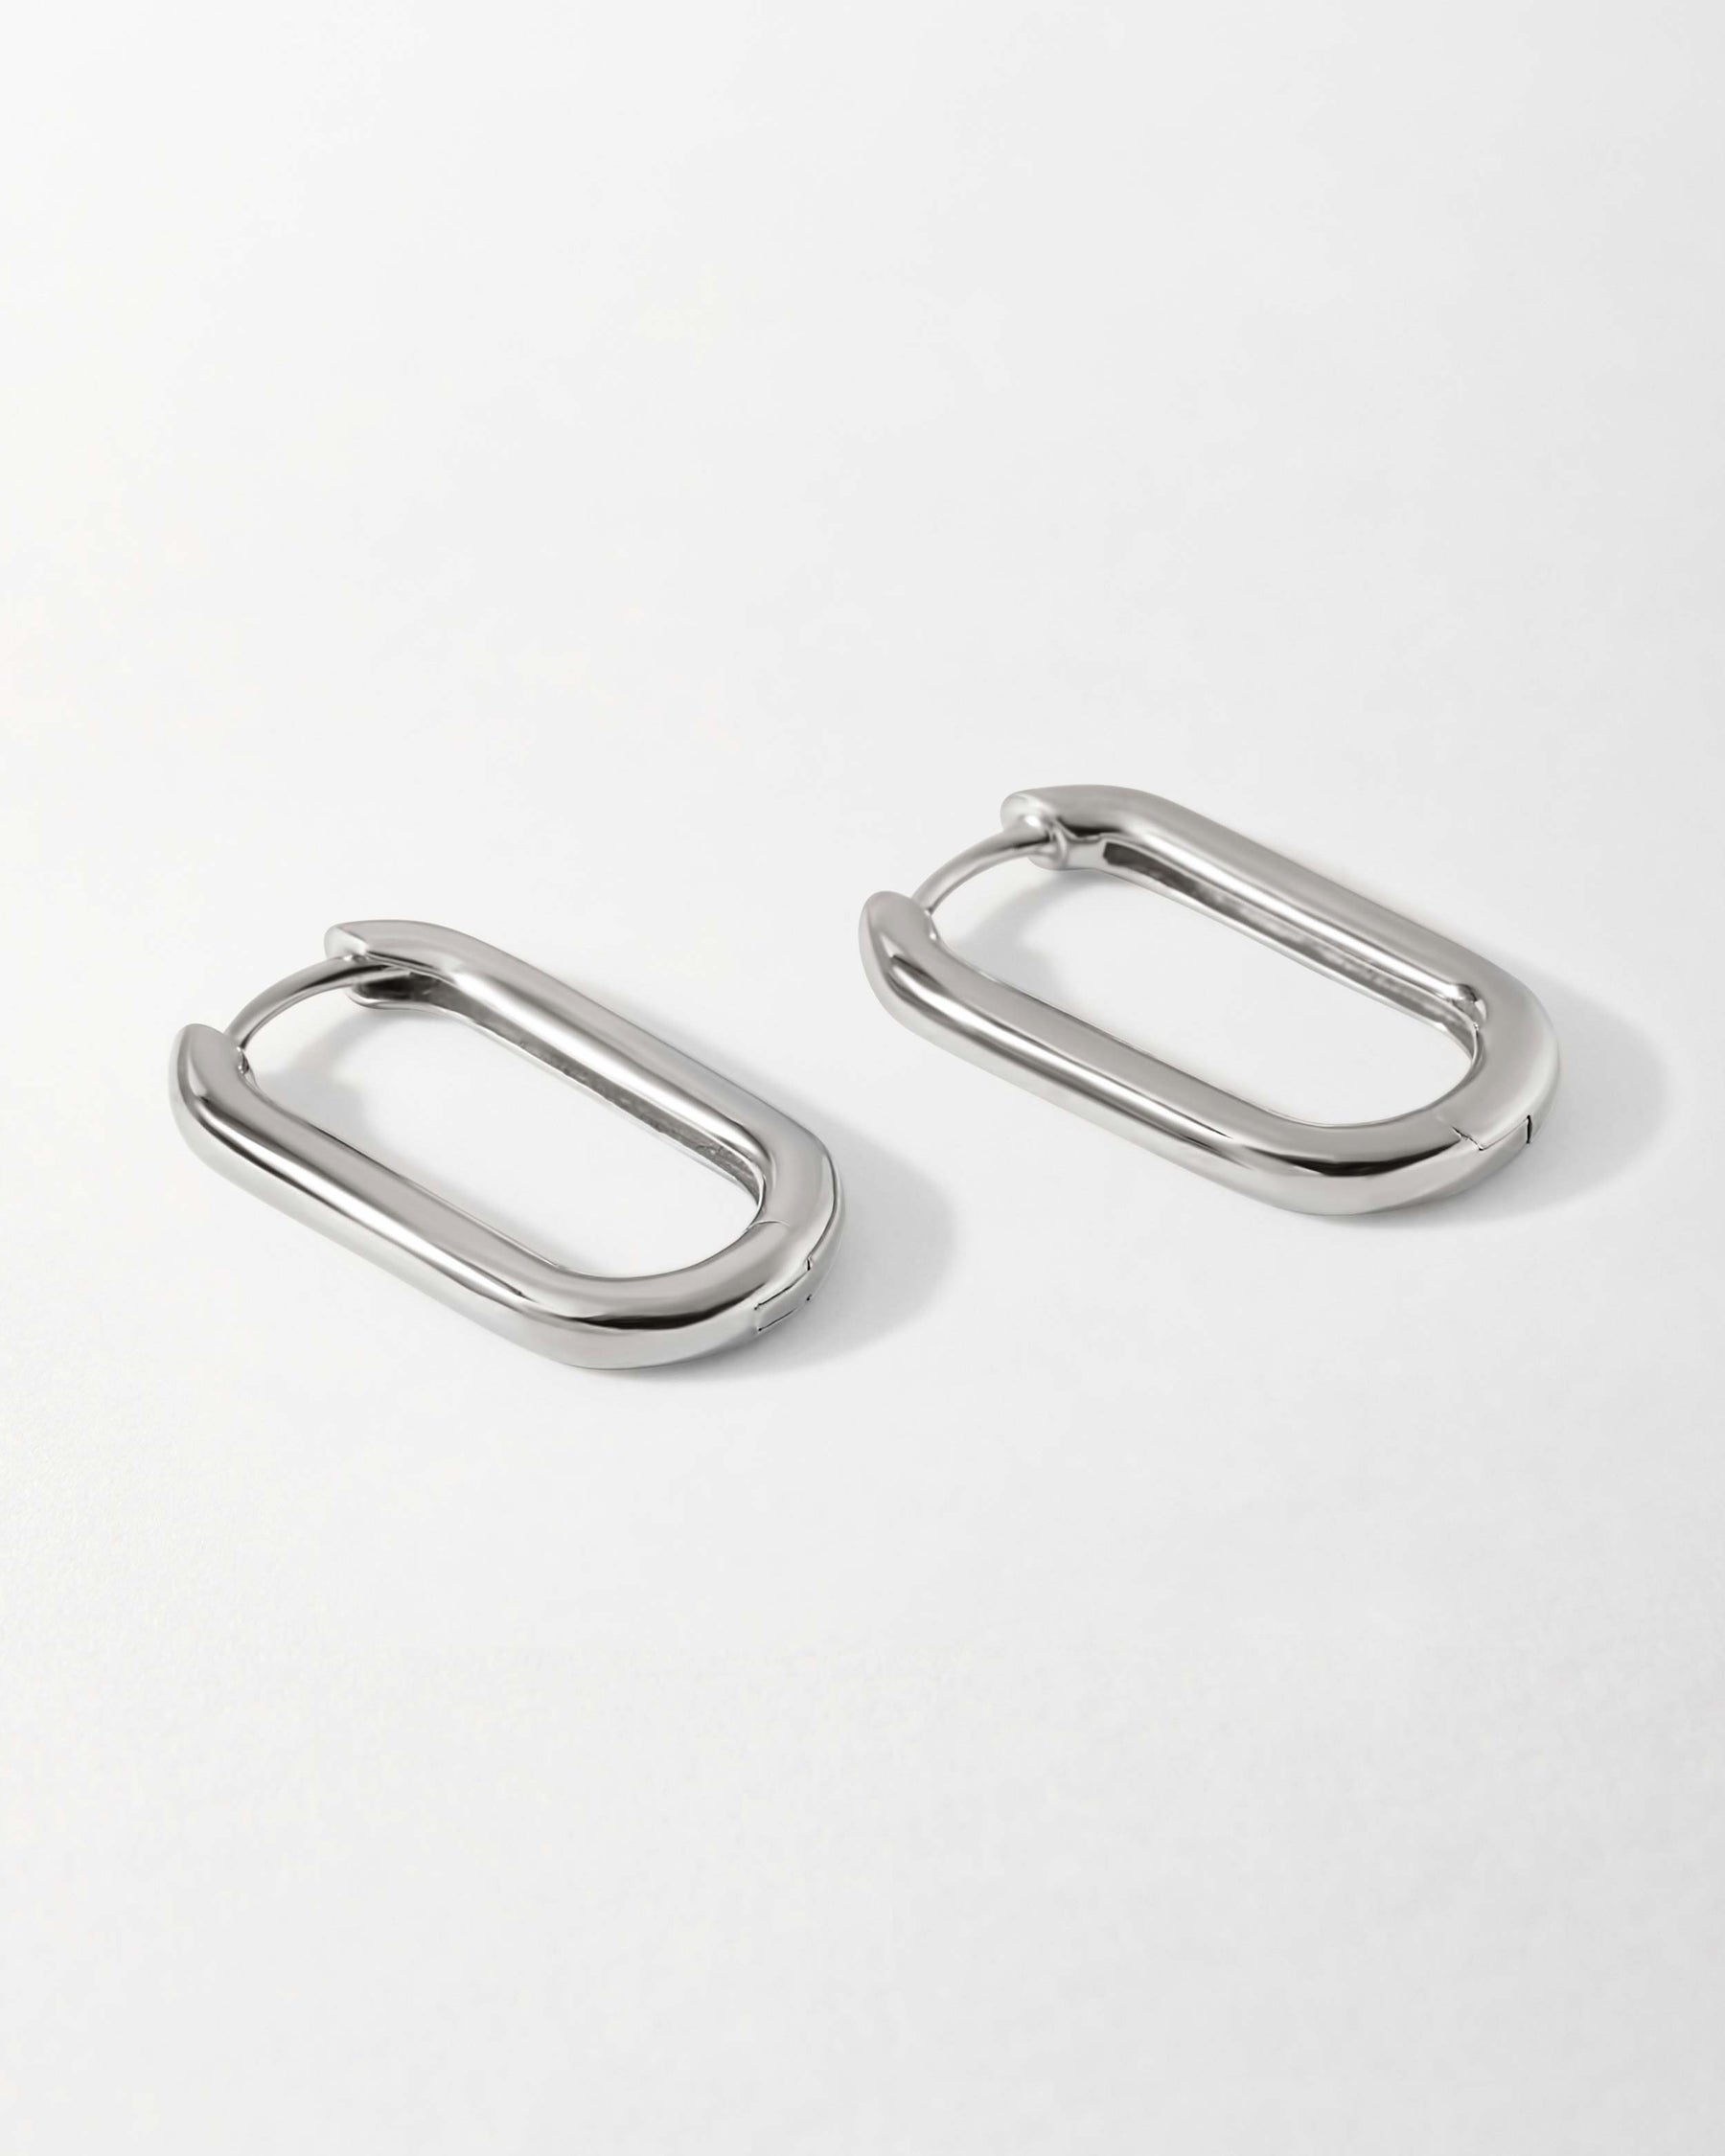 Medium Thick Silver Hoop Earring Hoop Earrings Clasp Hoop Earrings Sterling Silver Chunky 925 Sterling Silver Hoops Everyday